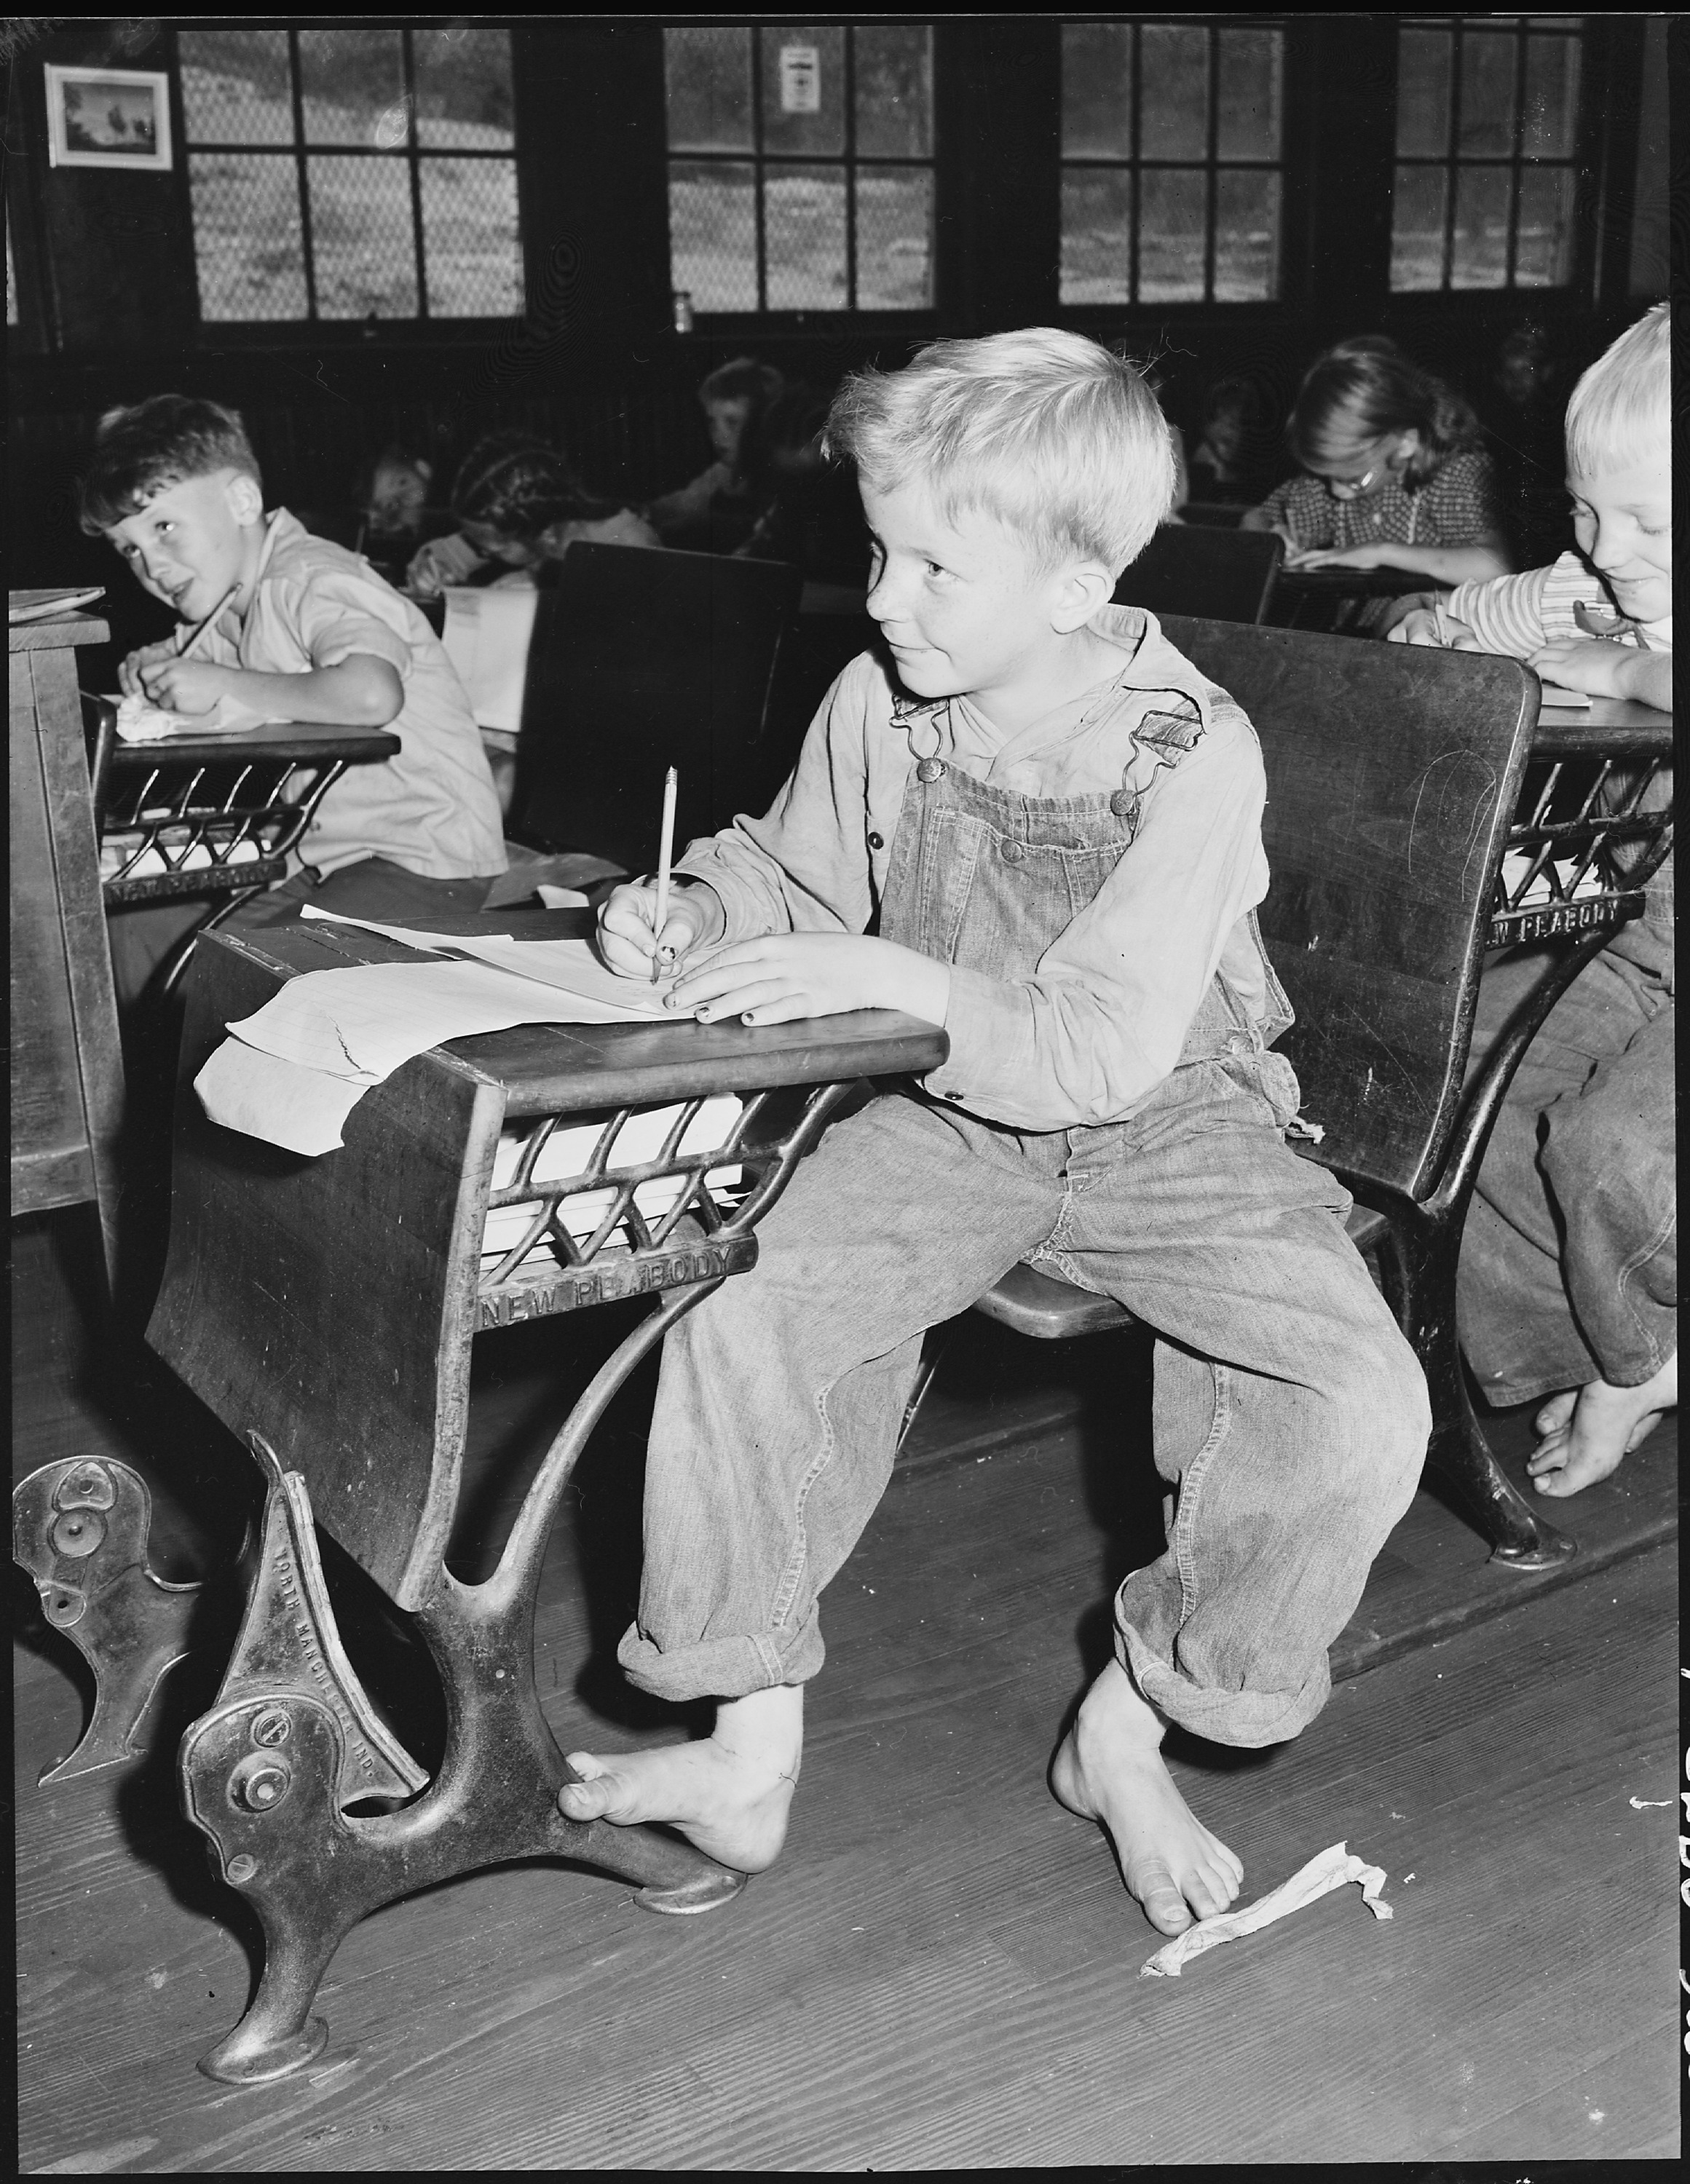 Coal miner's child in grade school. Lejunior, Harlan County, Kentucky. - NARA - 541367